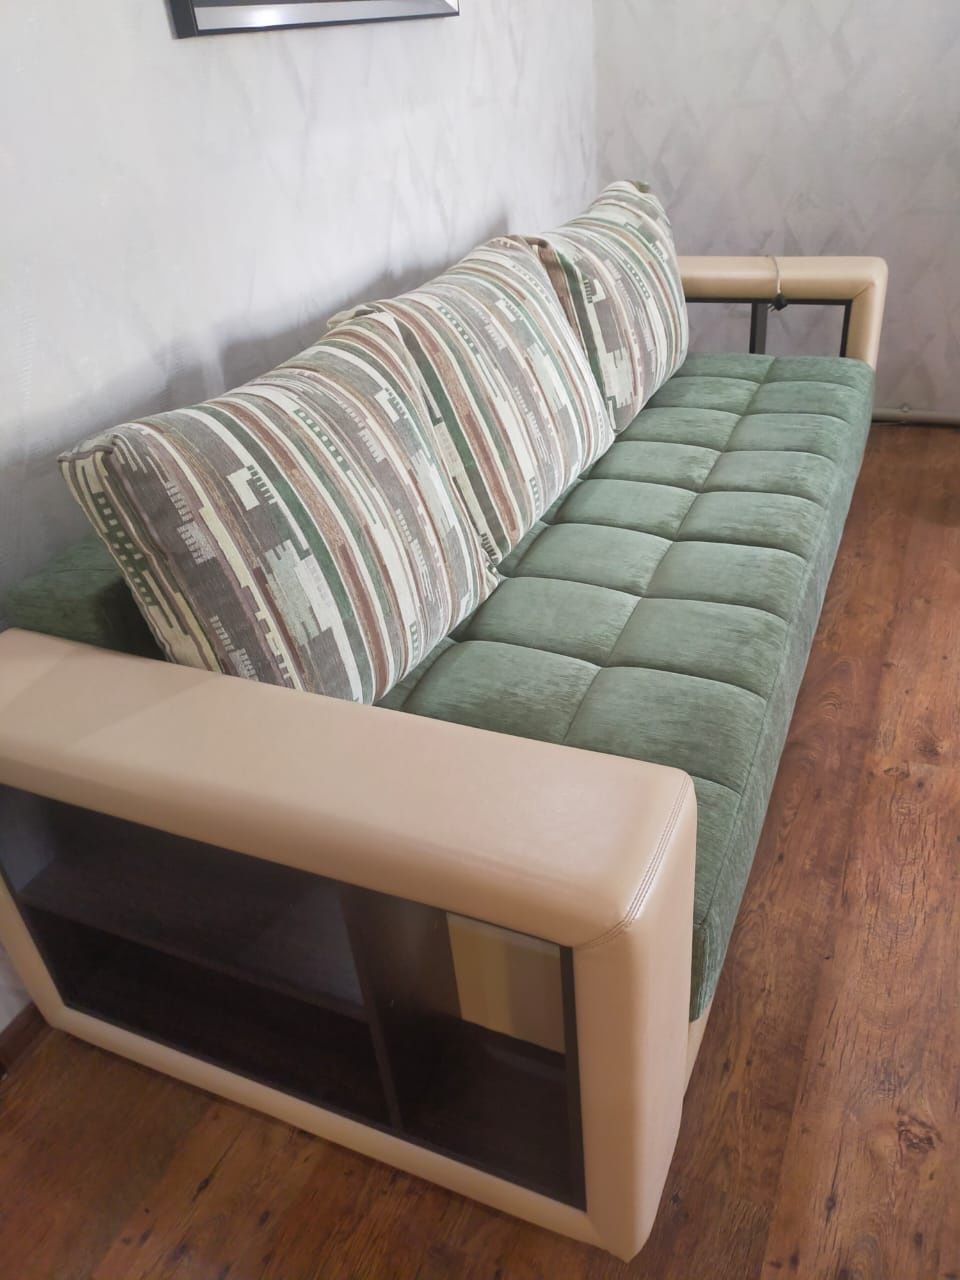 Продам набор мягкой мебели в хорошем состоянии,(диван, кресло, пуфик)